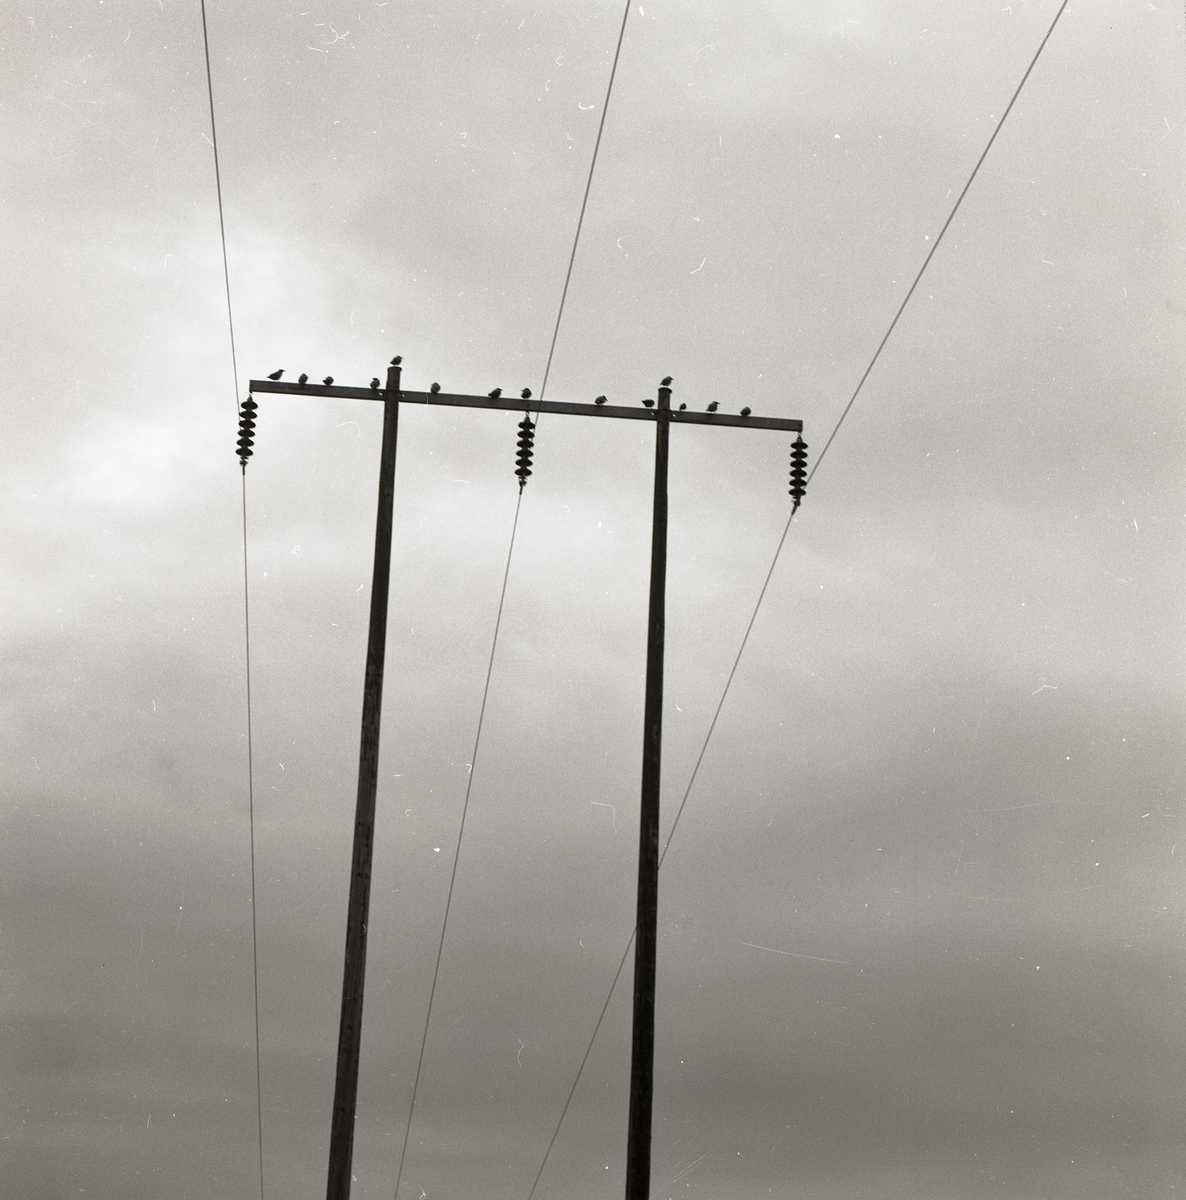 En flock kråkor sitter högst uppe på en elstolpe, 1972.